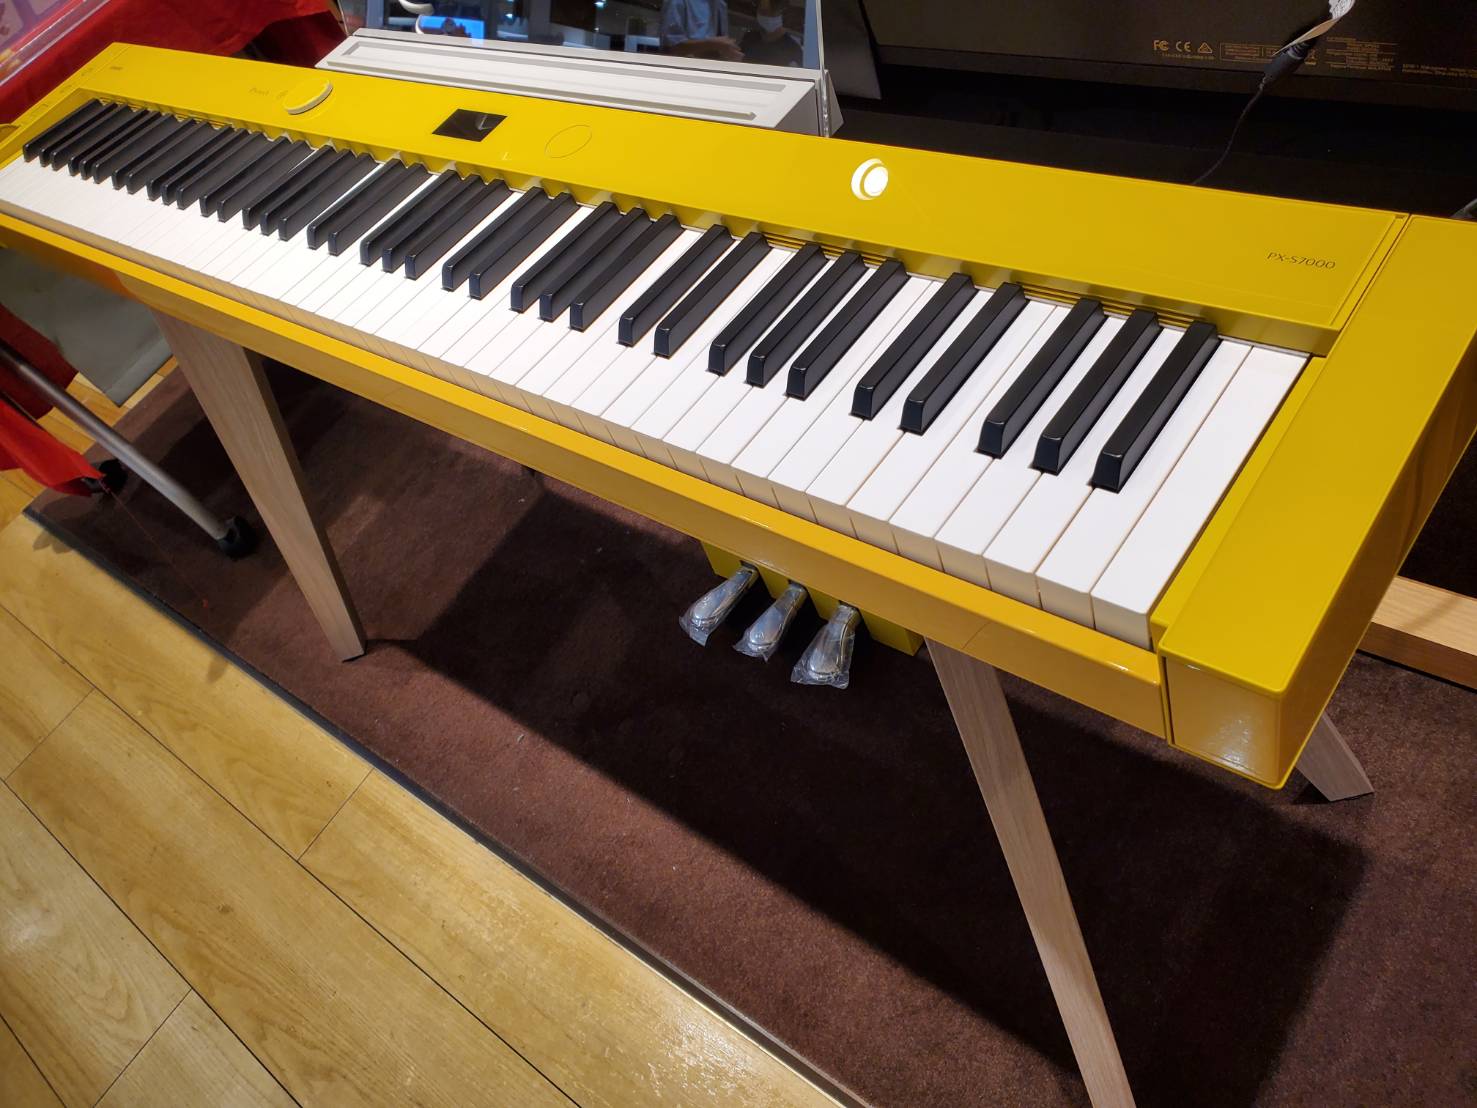 奥行約30cmの電子ピアノをご紹介♪ CONTENTSプラスチック鍵盤でコストパフォーマンスに優れたモデル木製鍵盤で演奏性もデザイン性も抜群なモデルご相談はこちらまで♪プラスチック鍵盤でコストパフォーマンスに優れたモデル 木製鍵盤で演奏性もデザイン性も抜群なモデル ご相談はこちらまで♪ 実際にピアノ […]